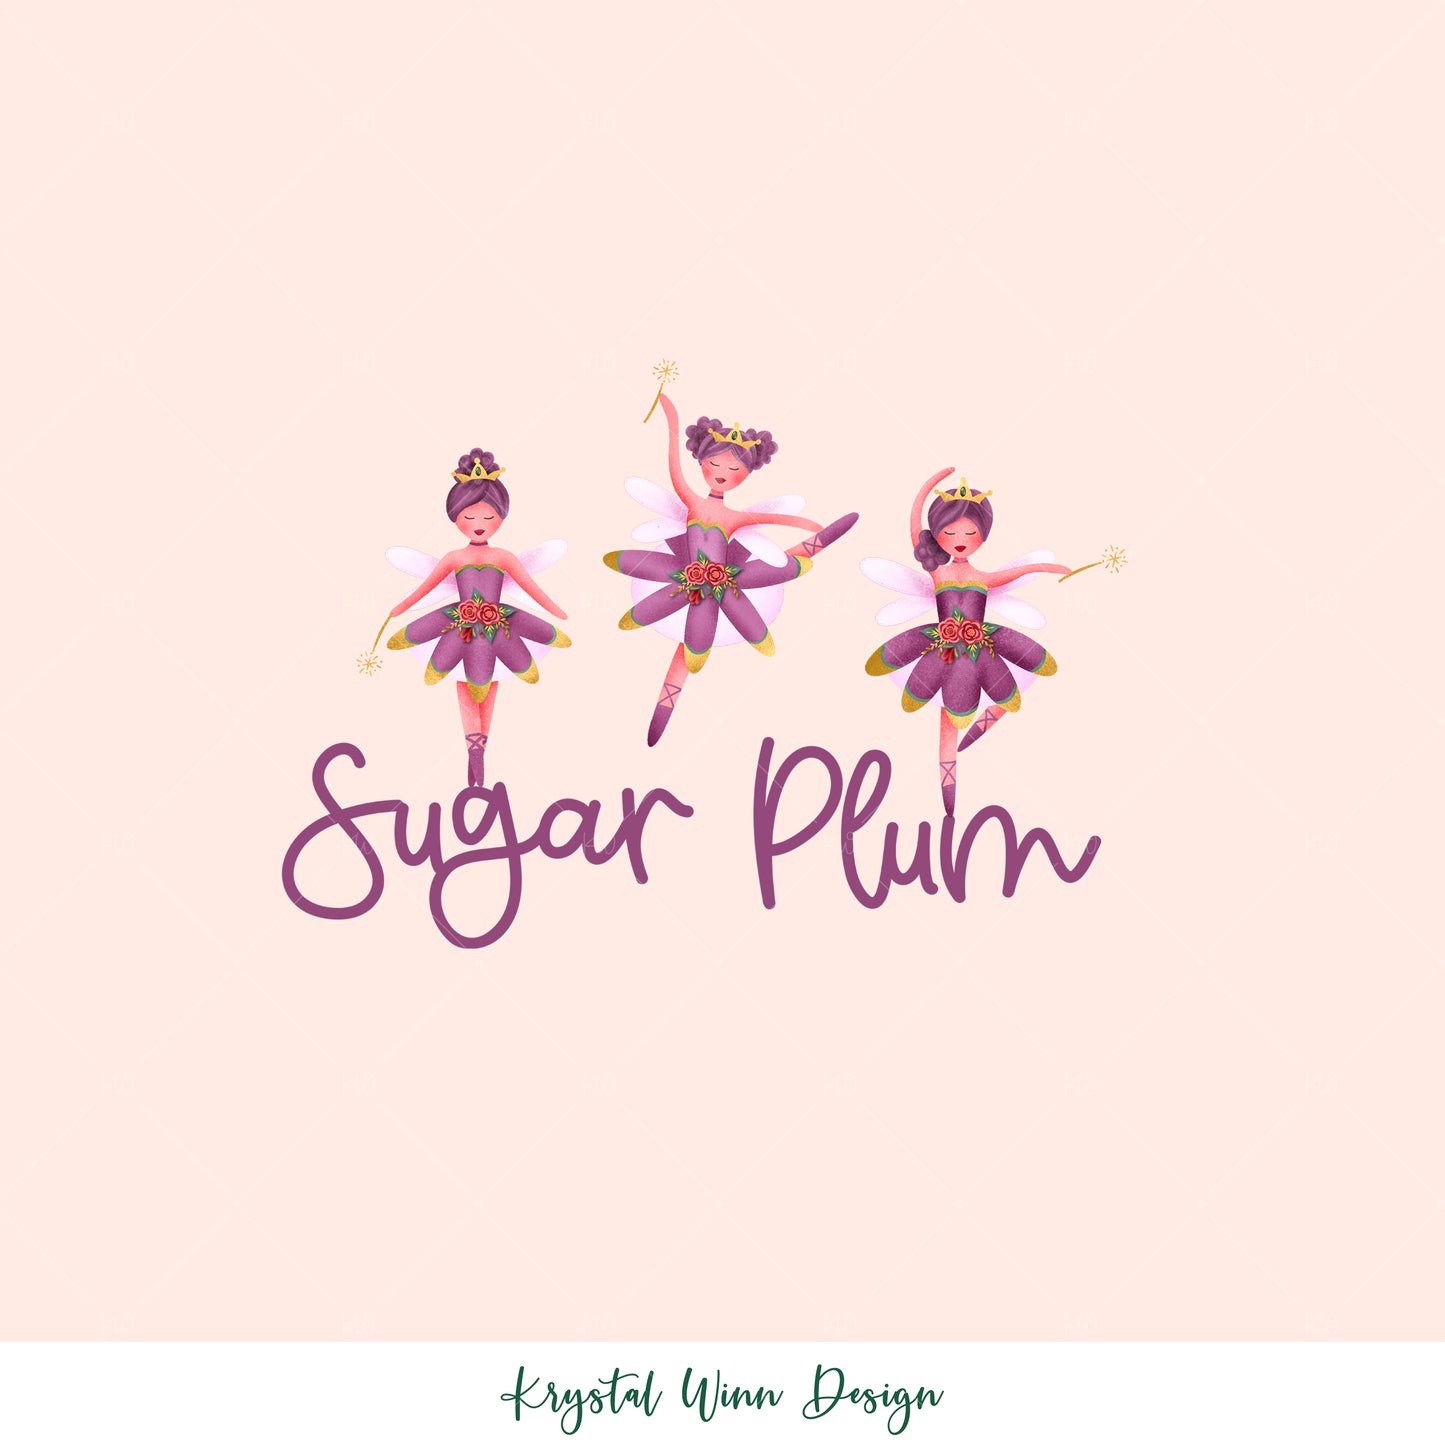 Sugar Plum Fairy KW237